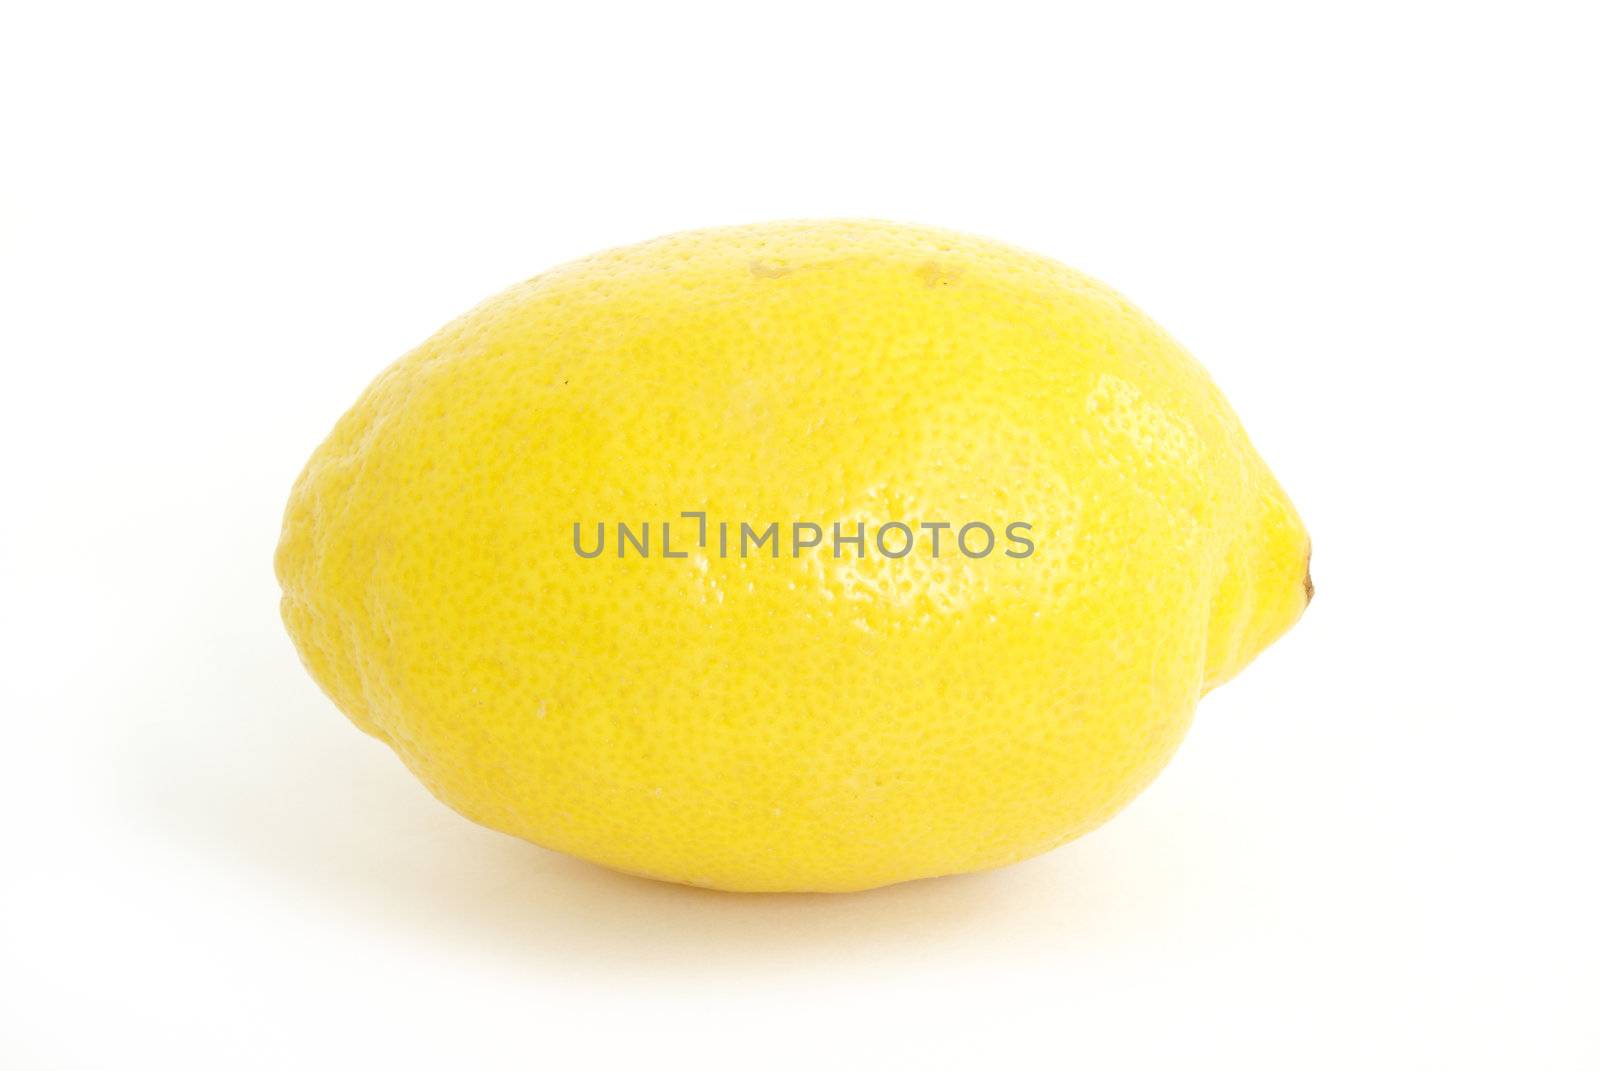 A fresh whole lemon on white background.